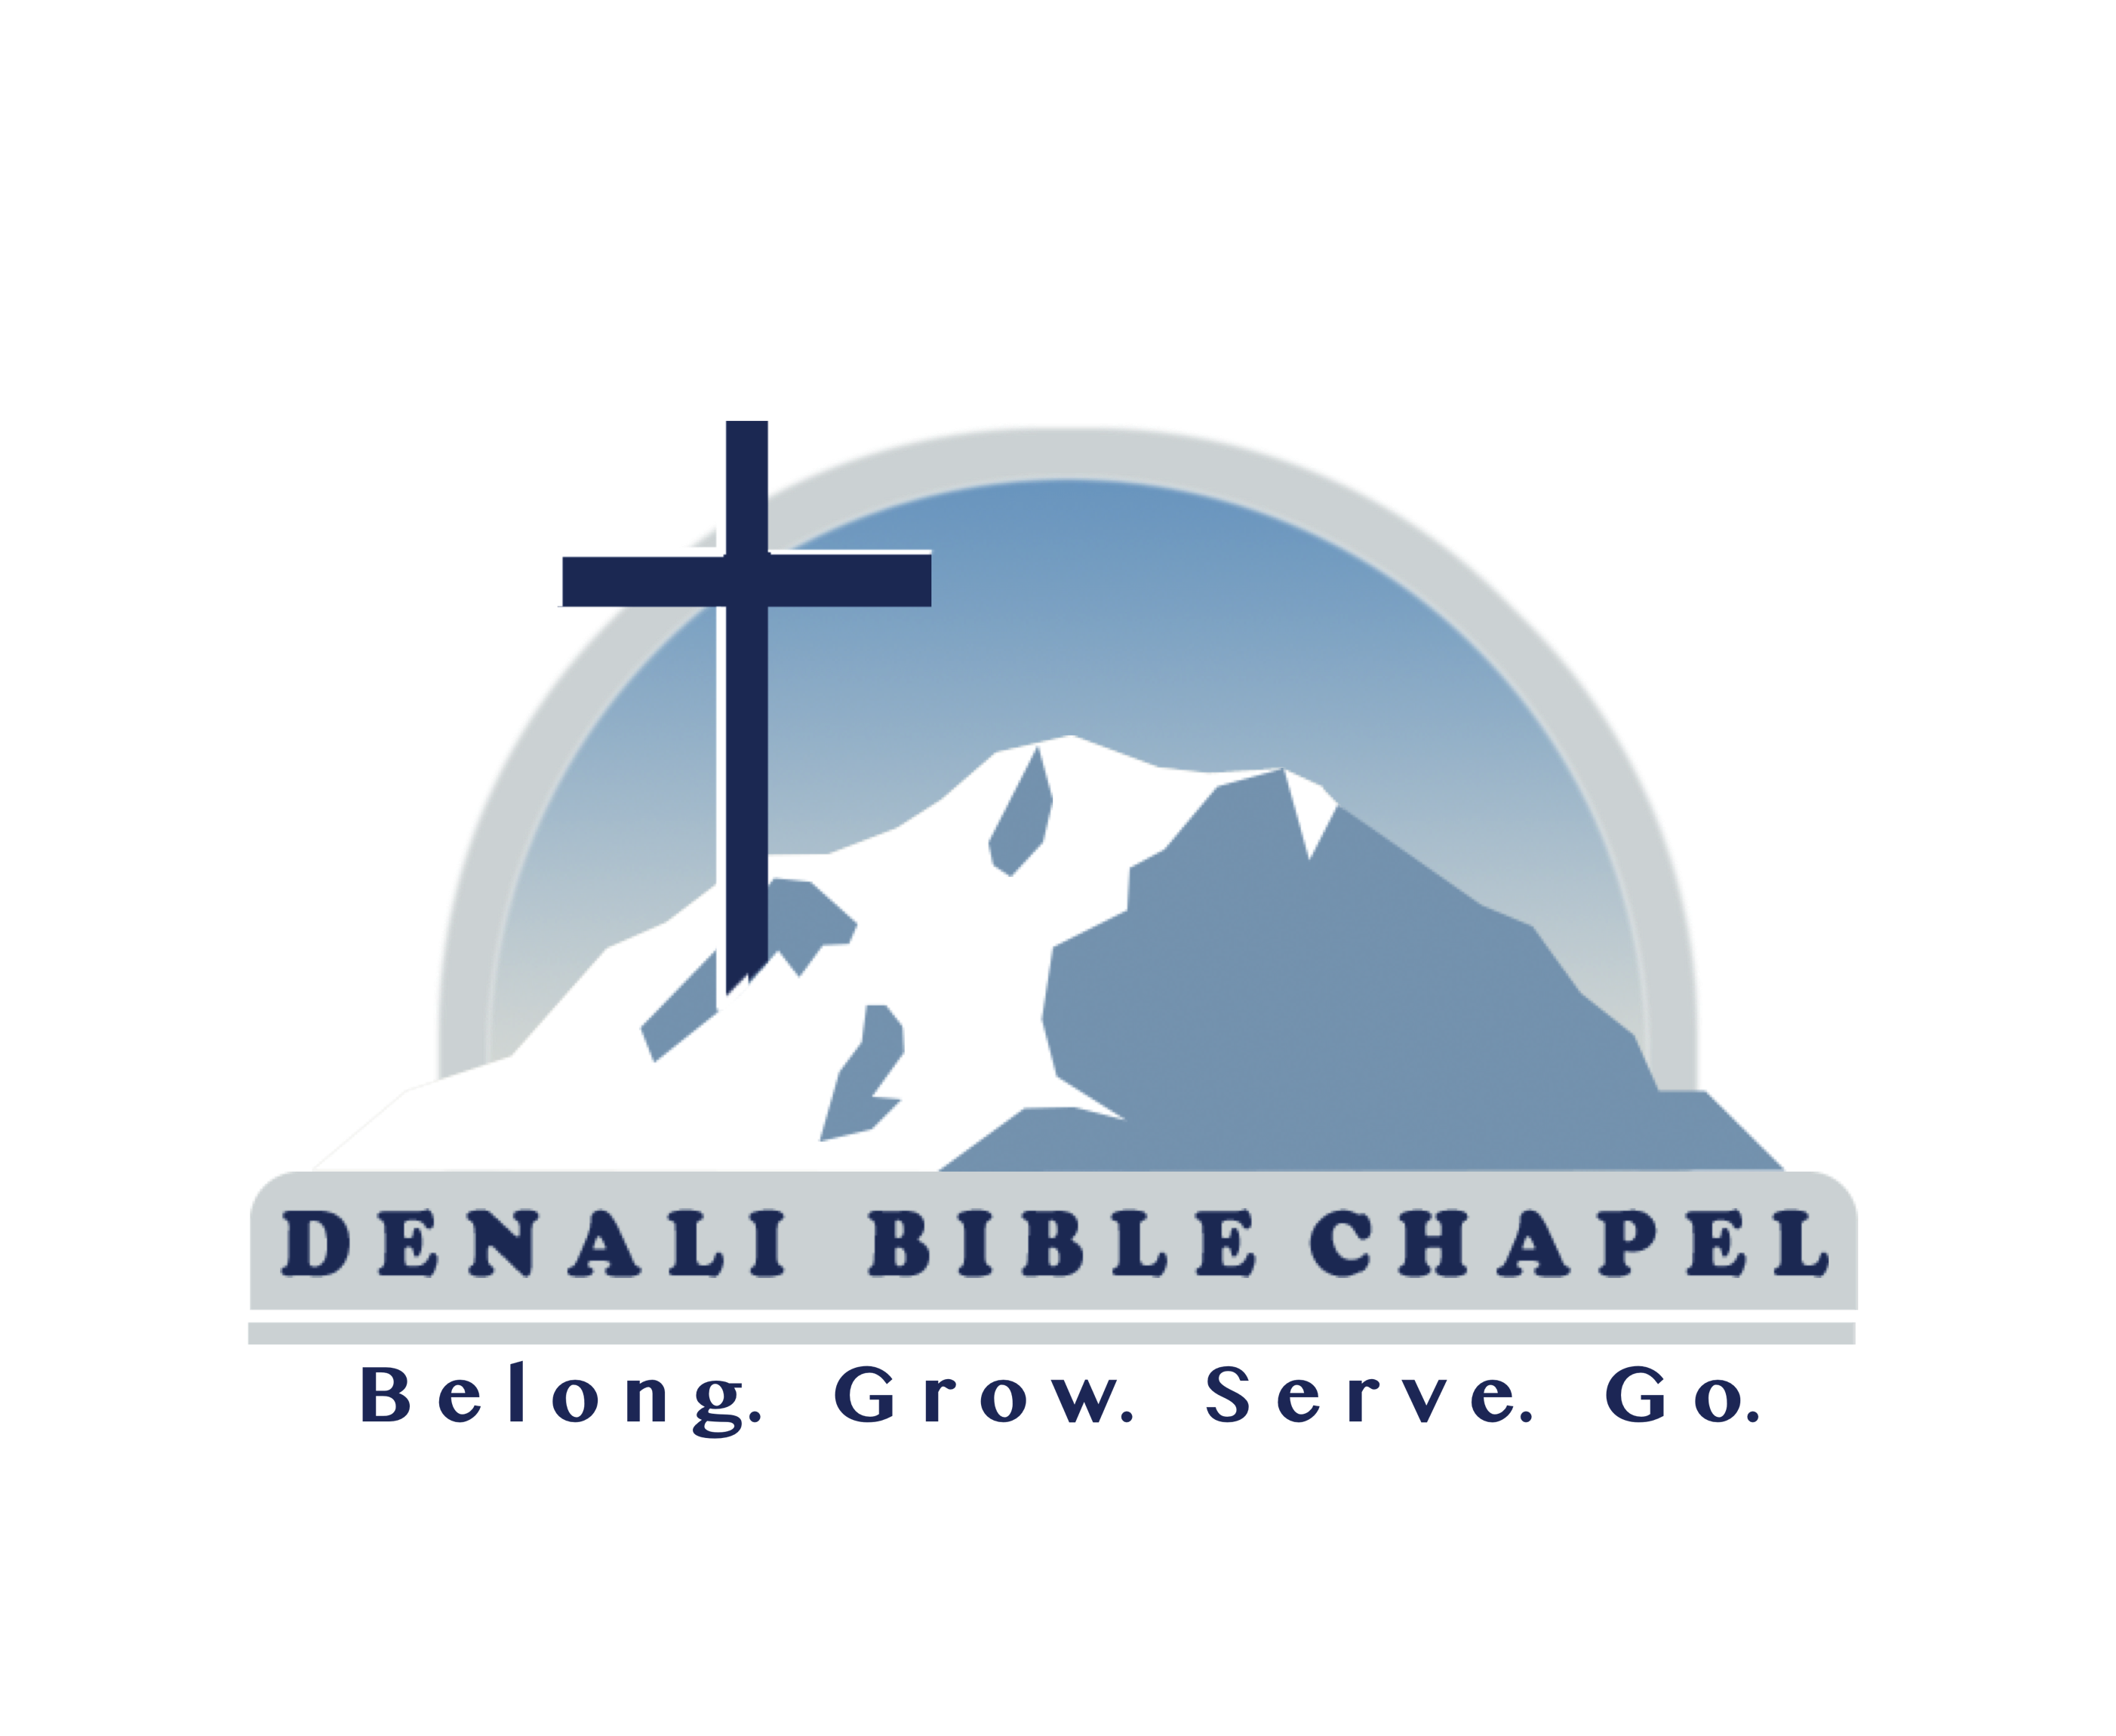 Denali Bible Chapel logo